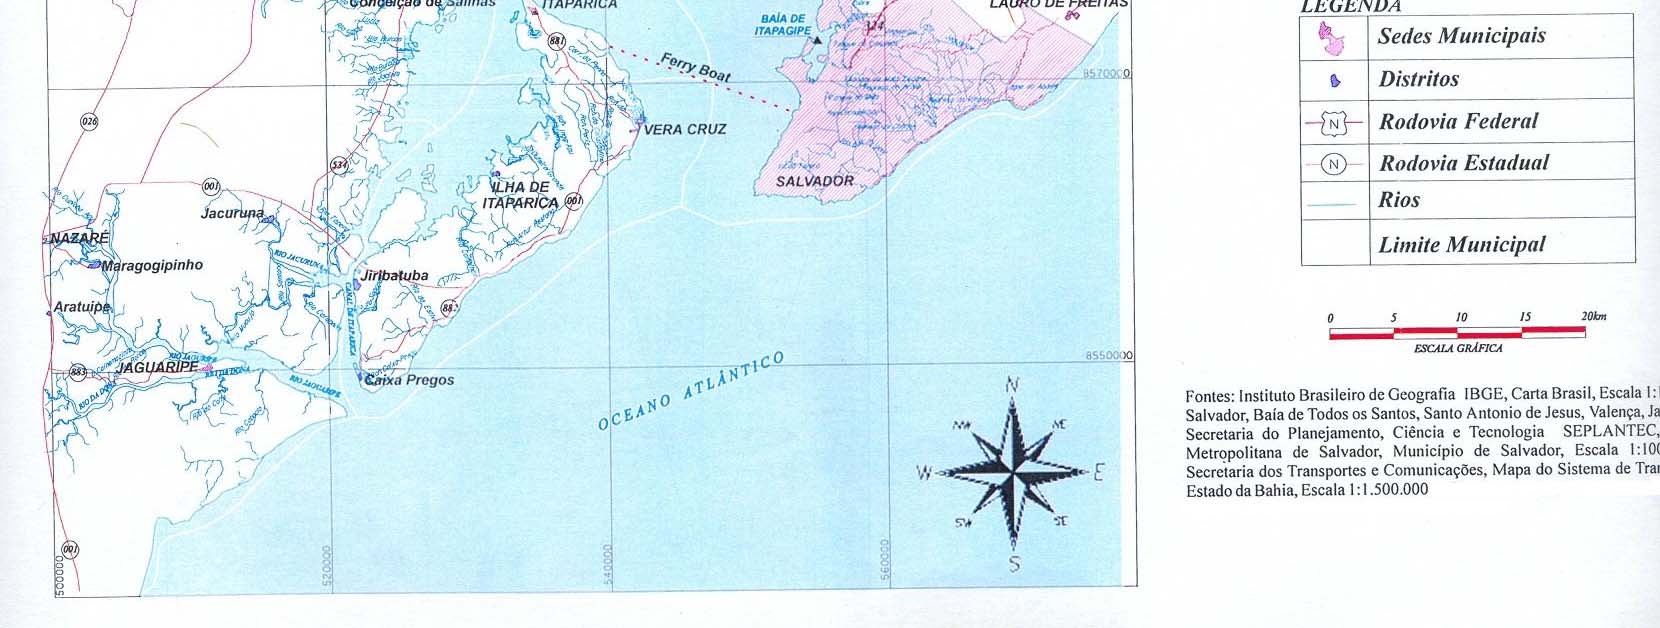 Anexo 06 Localização, divisão política e sistema viário da Baía de